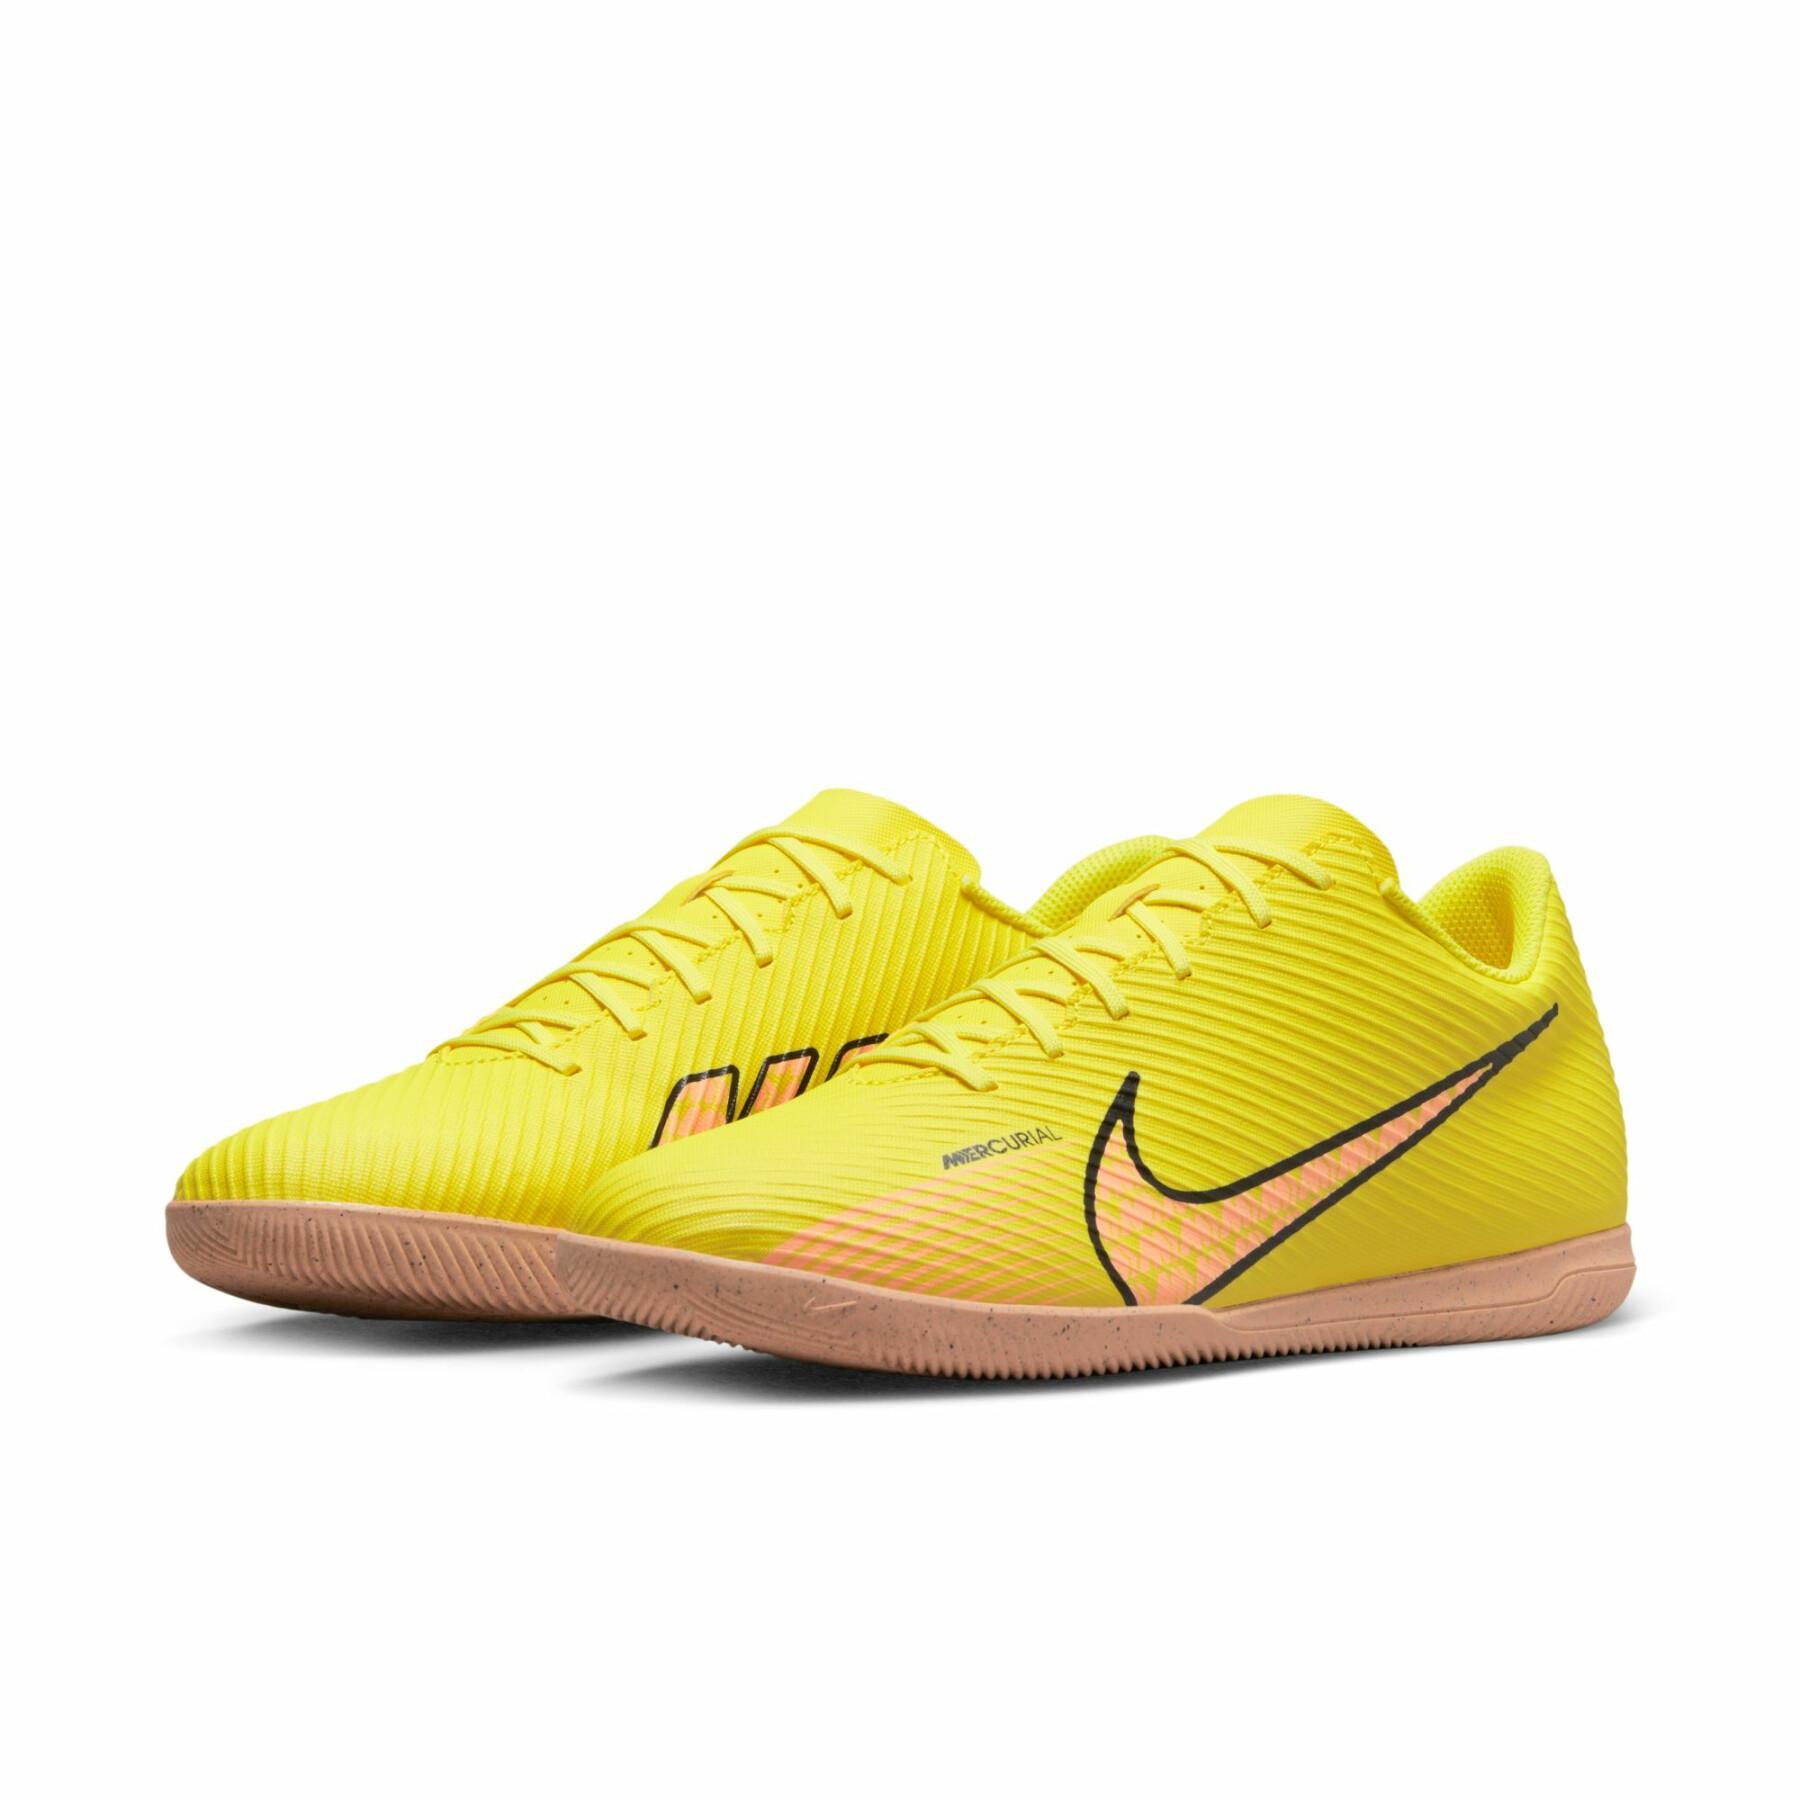 Sapatos de futebol Nike Mercurial Vapor 15 Club IC - Lucent Pack